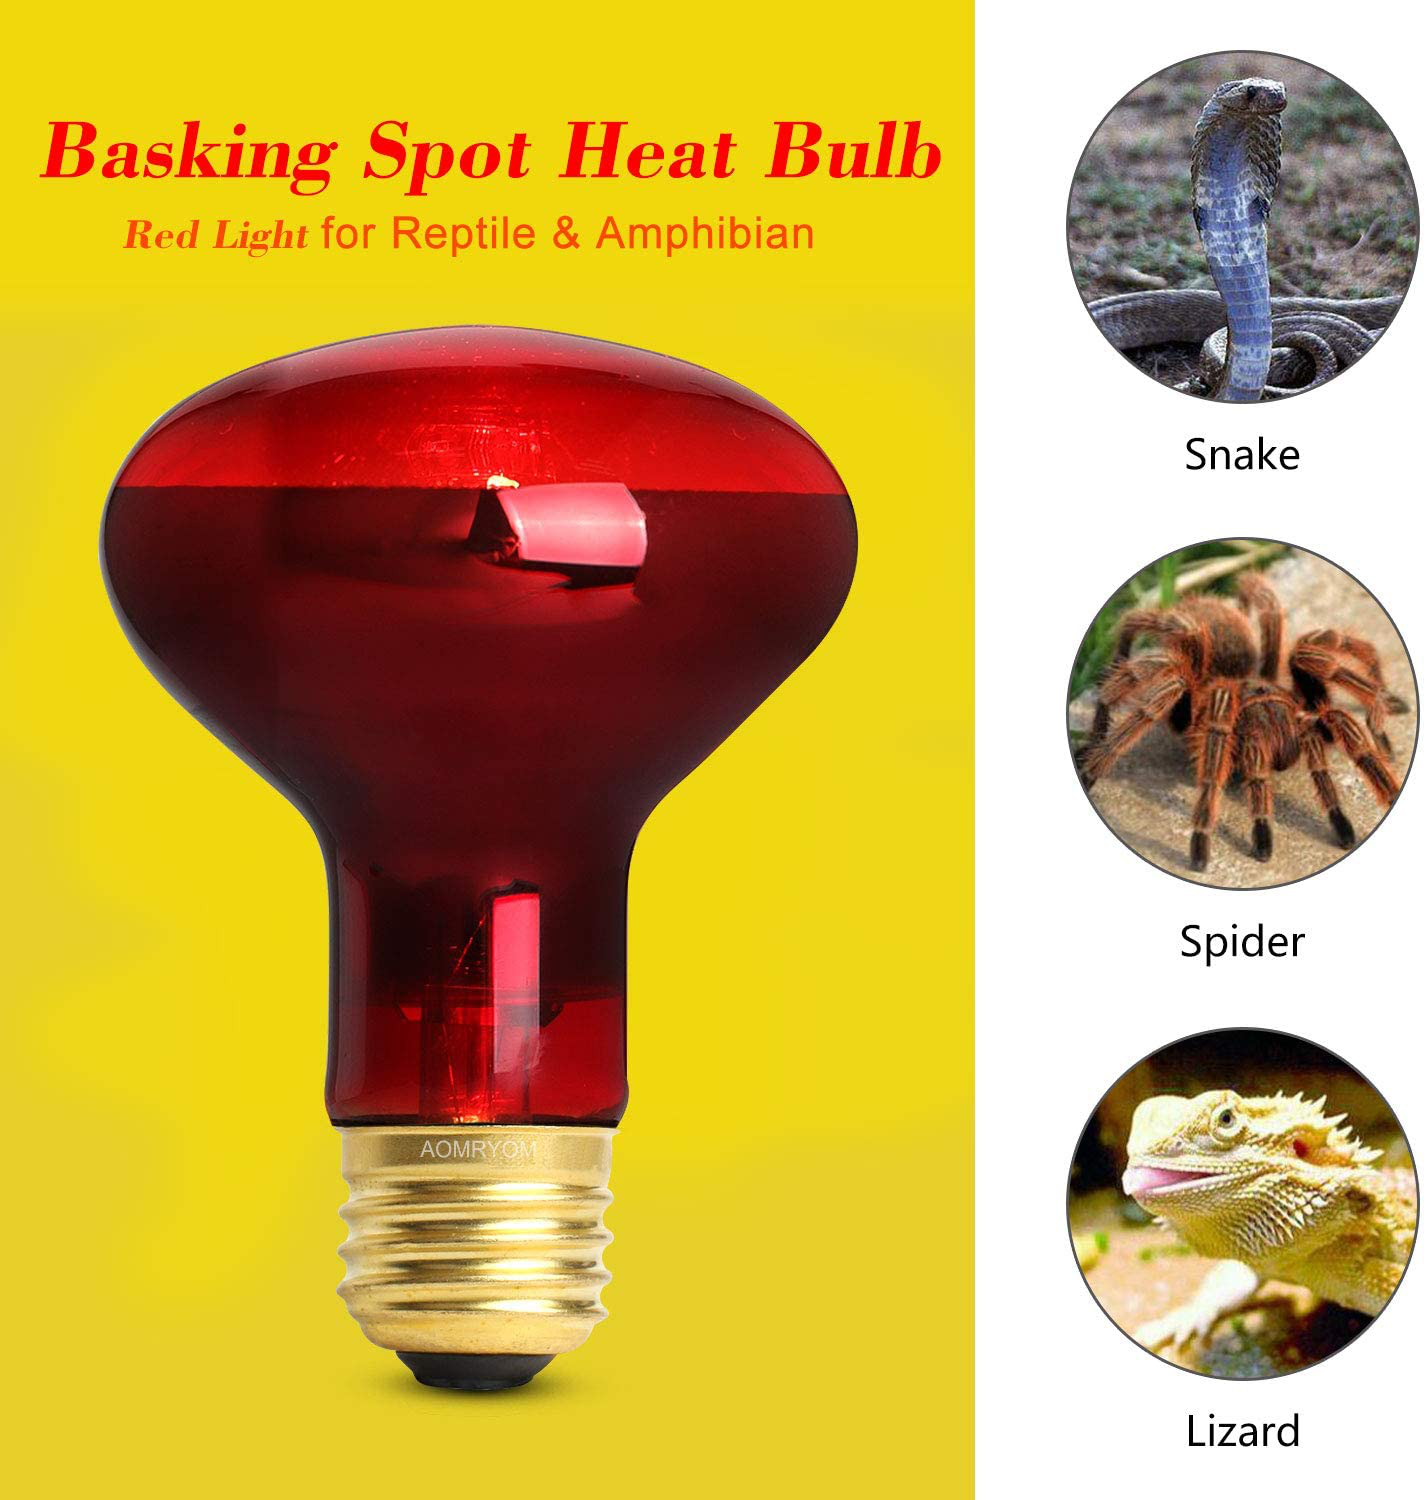 AOMRYOM 75W Infrared Basking Spot Heat Lamp Bulb Red Light Heat Bulbs for Pet Lizards Bearded Dragons Chameleons Snakes Reptiles & Amphibians - 2 Pack